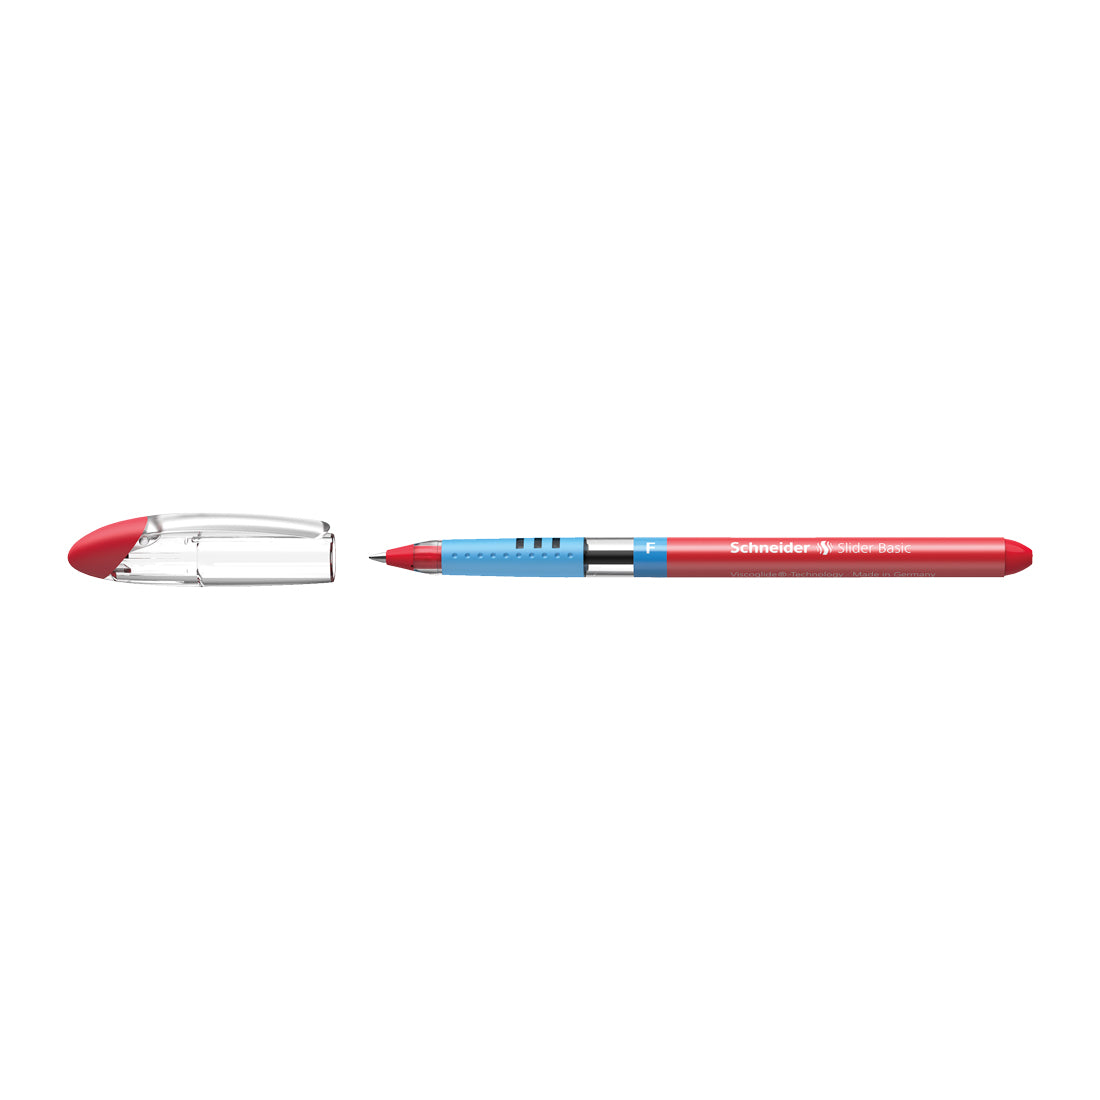 Slider BASIC Ballpoint Pens F, Box of 10#colour_red